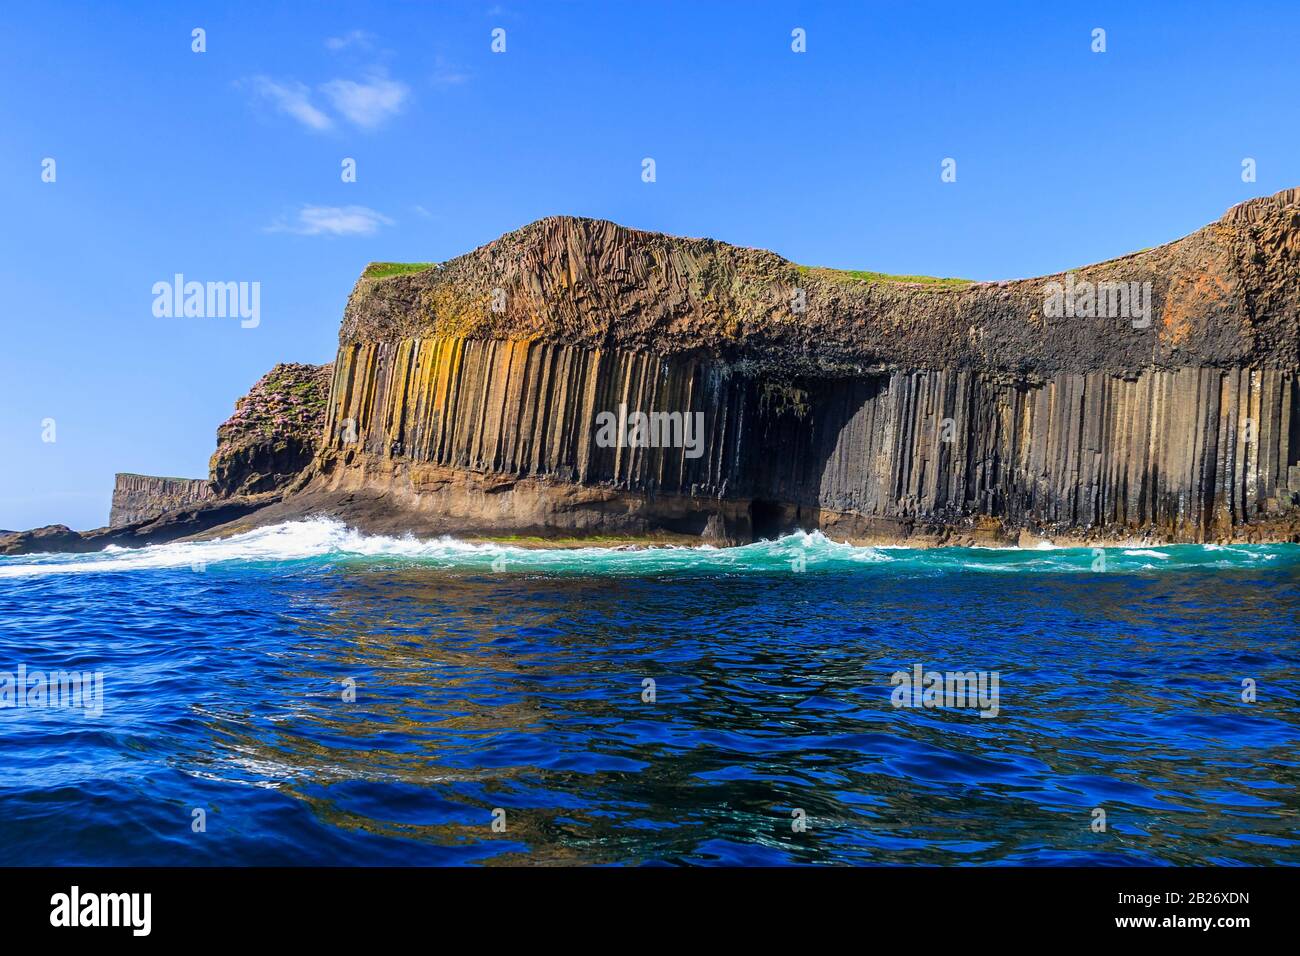 La grotta di Fingal con colonne di basalto sull'isola di staffa in scozia Foto Stock